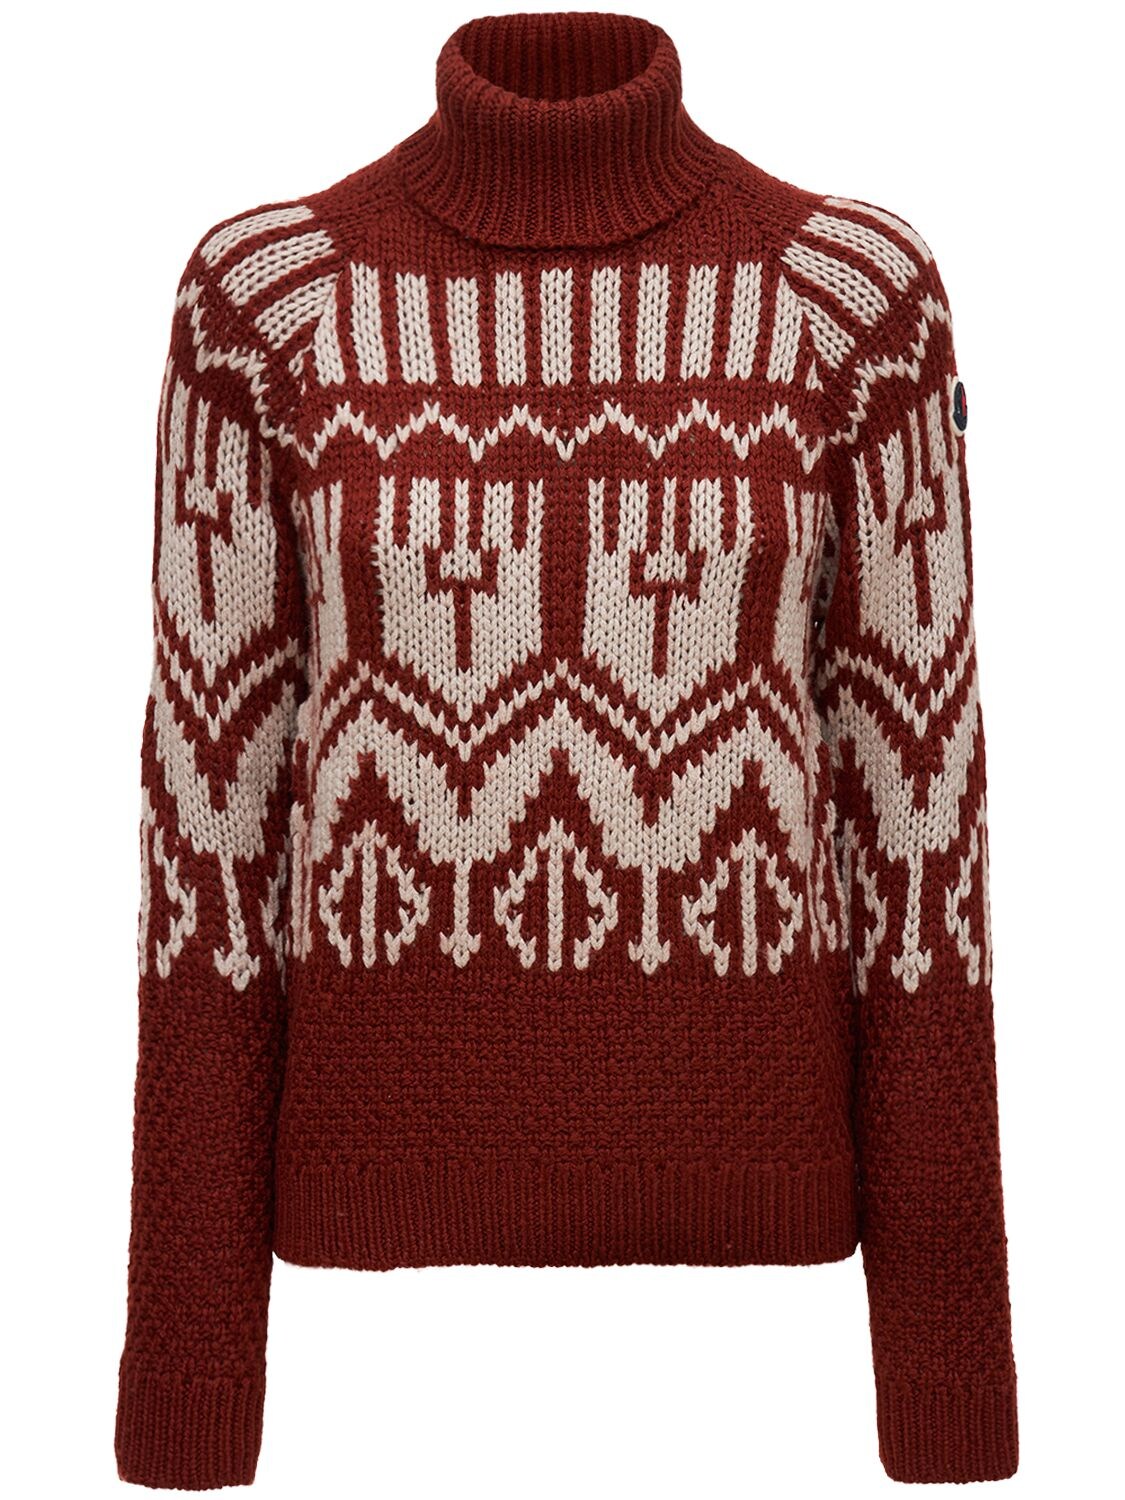 Wool Blend Knit Turtleneck Sweater